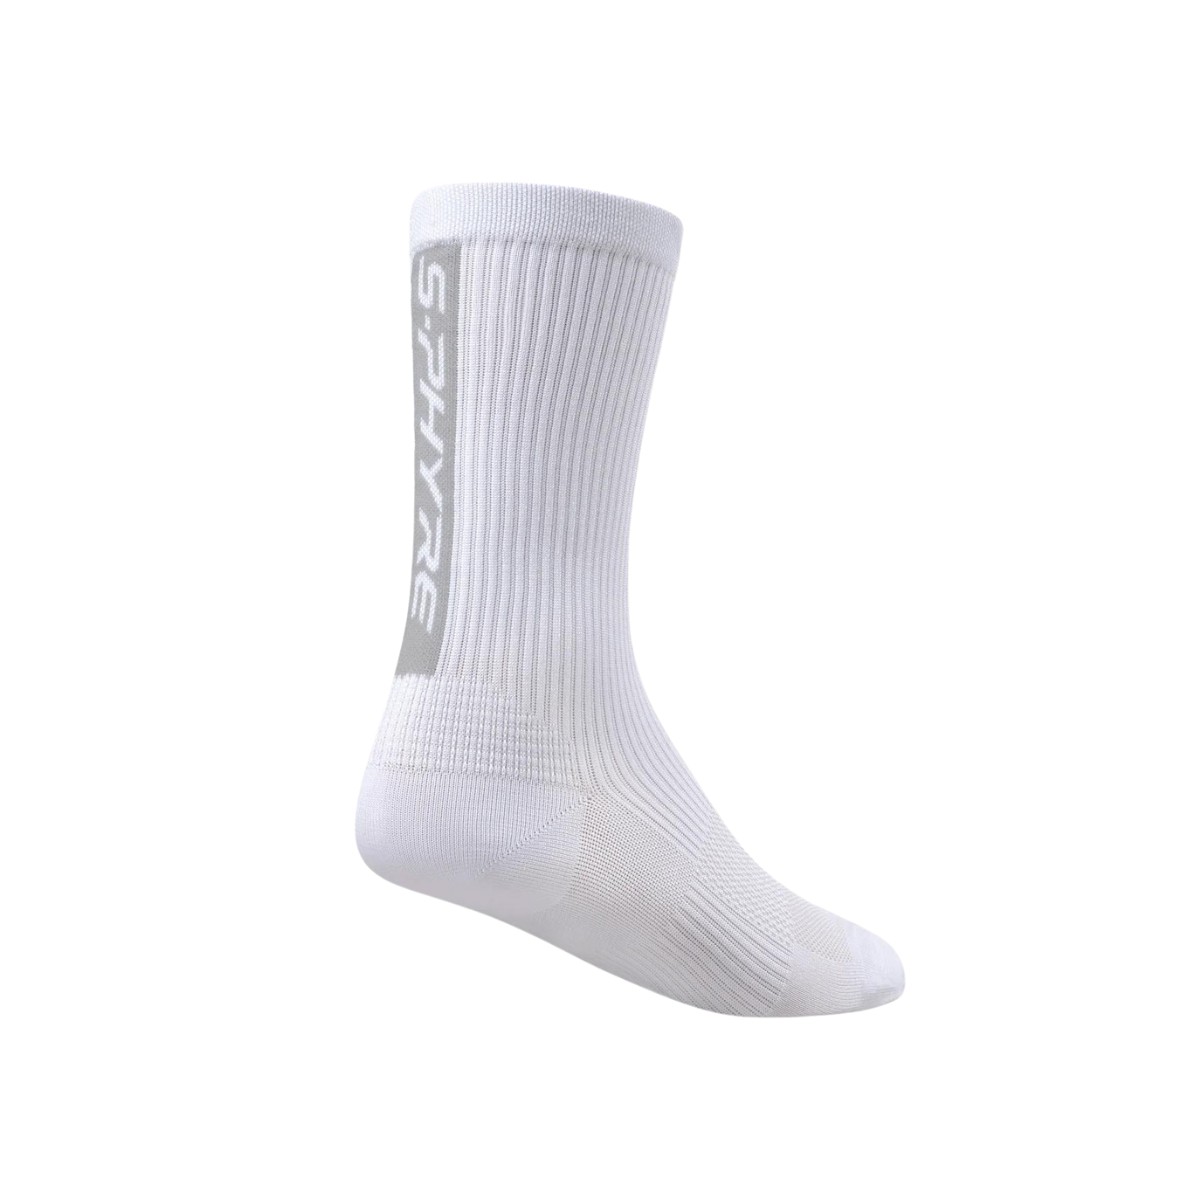 Mit 6 günstig Kaufen-Shimano S-Phyre Flash Weiße Socken, Größe L/XL. Shimano S-Phyre Flash Weiße Socken, Größe L/XL <![CDATA[Shimano S-Phyre Flash Socken Entdecken Sie maximale Leistung mit den Shimano S-Phyre Flash Socken, die speziell für Hoch